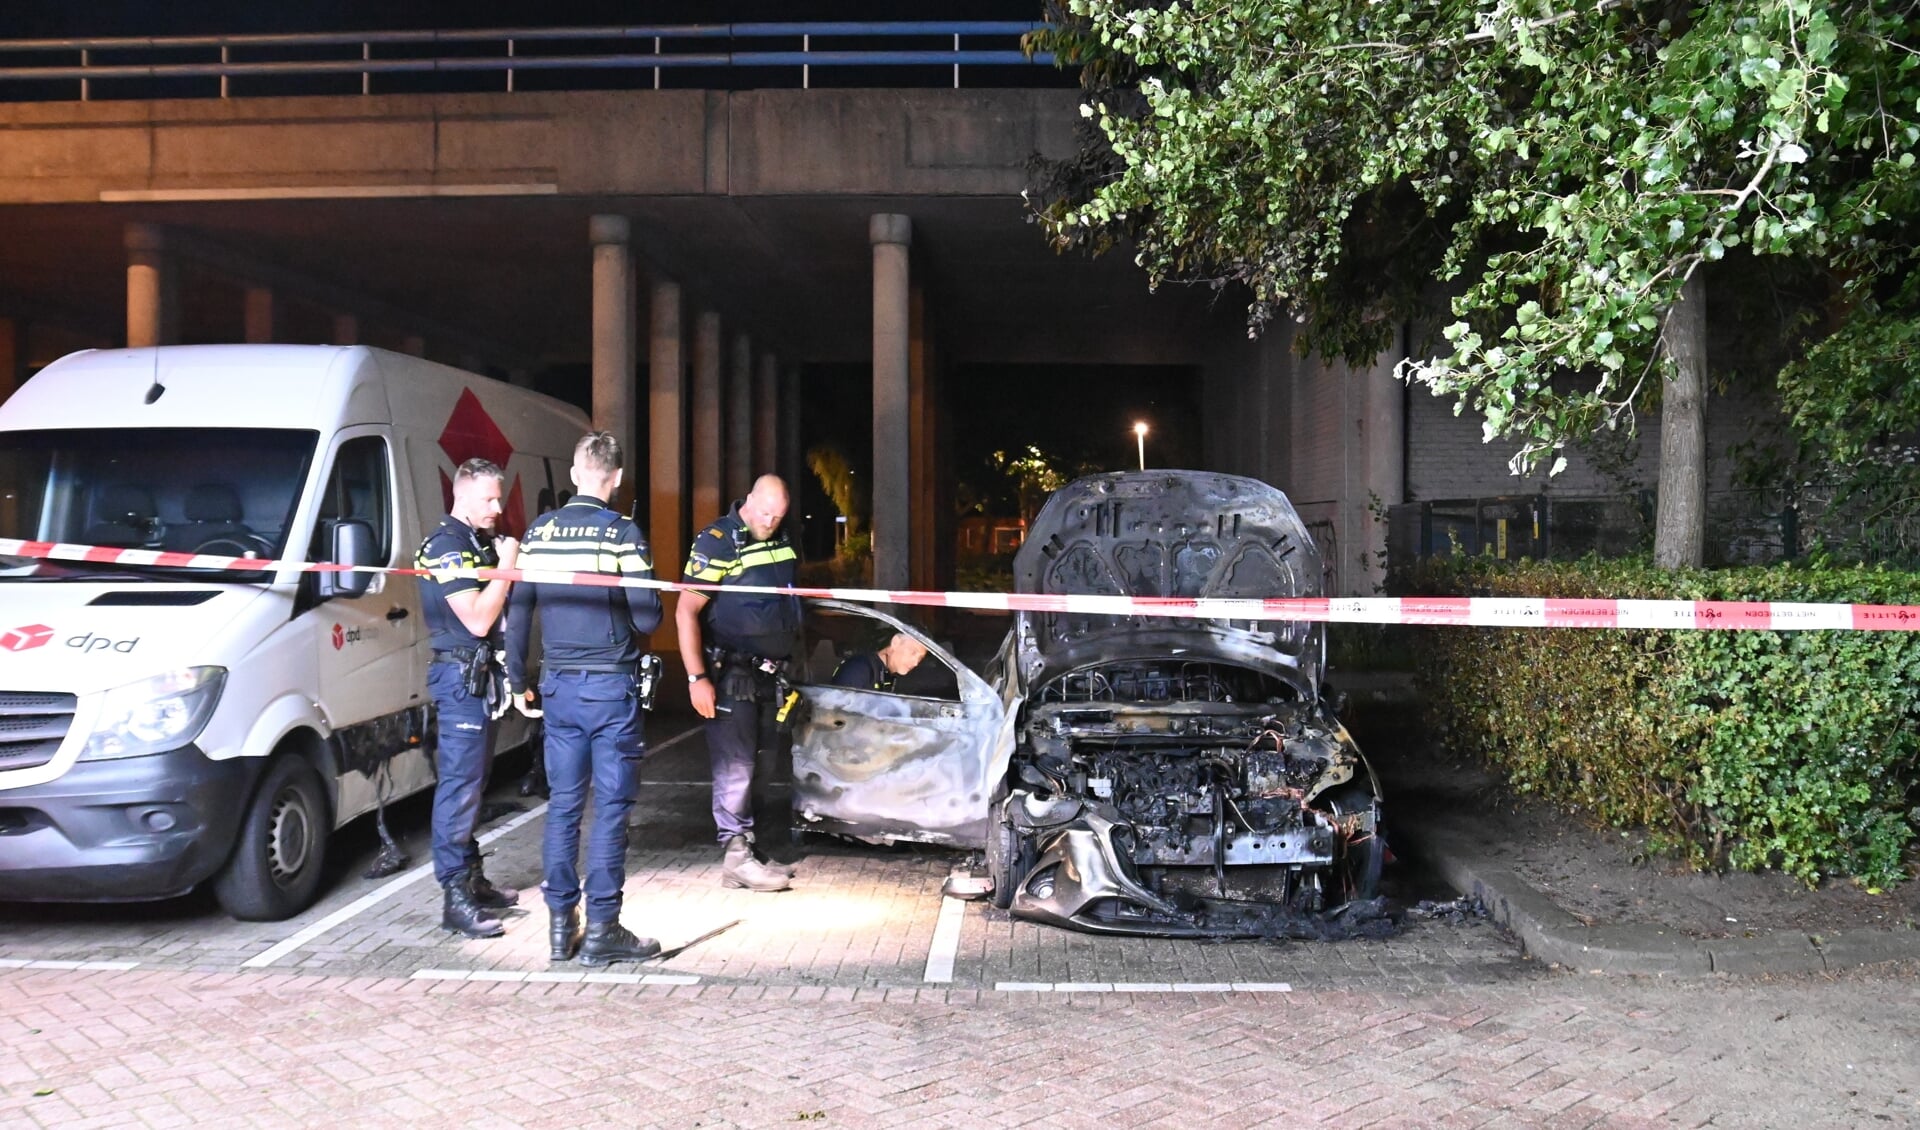 De uitgebrande auto is vermoedelijk gestolen. De politie trof bij de auto kentekenplaten aan die bij een andere auto horen. Foto: AS Media